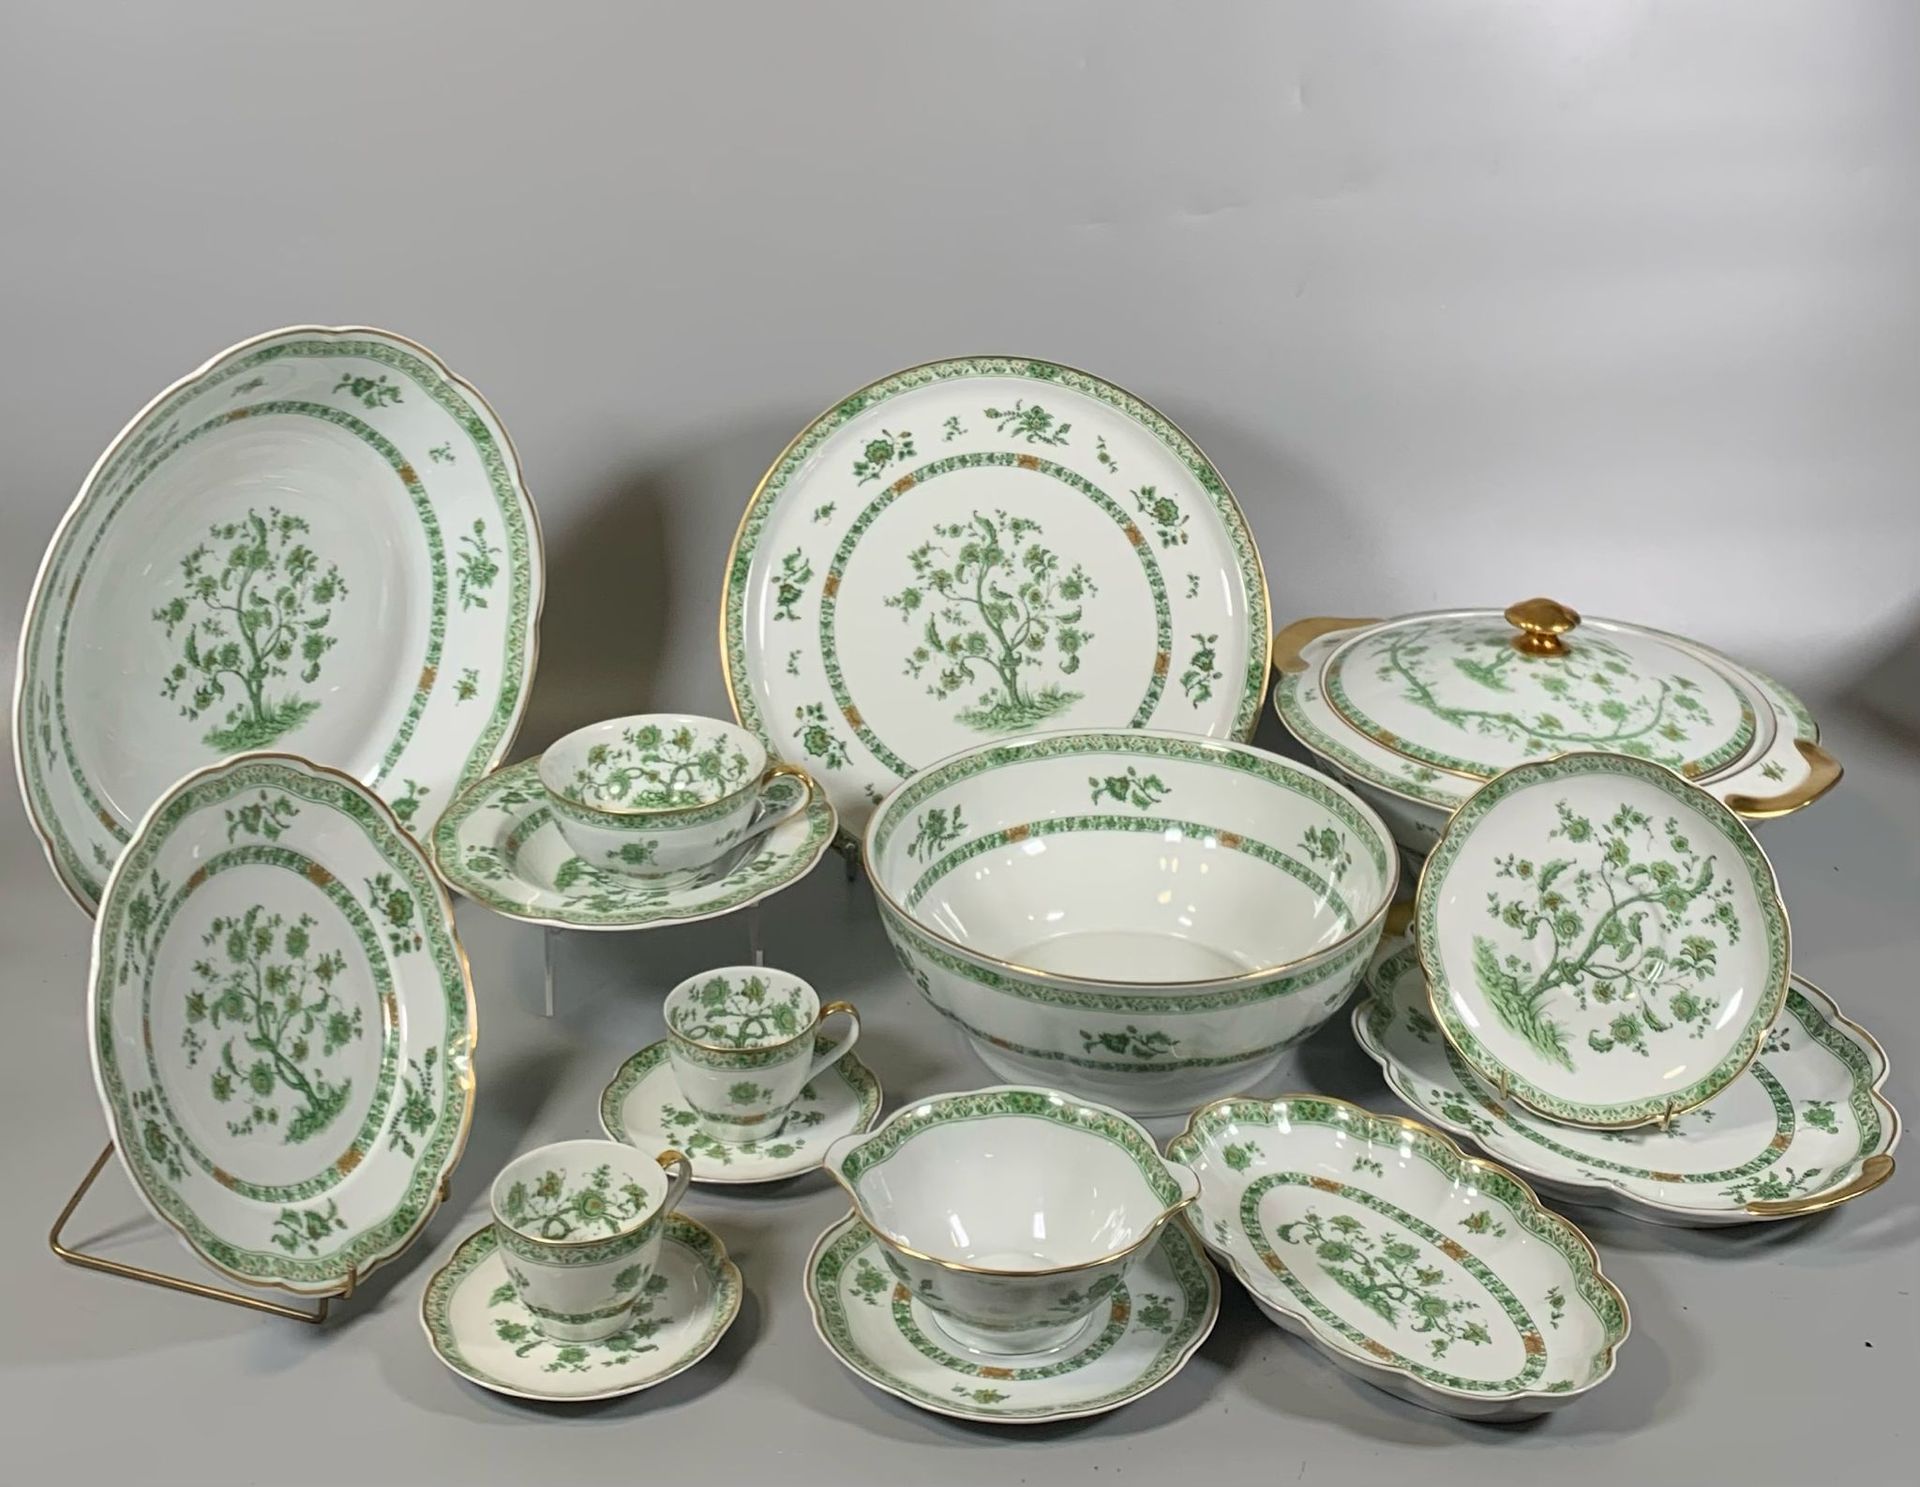 Null HAVILAND LIMOGES
Porcelain dinner service "Arbre de vie" model in green mon&hellip;